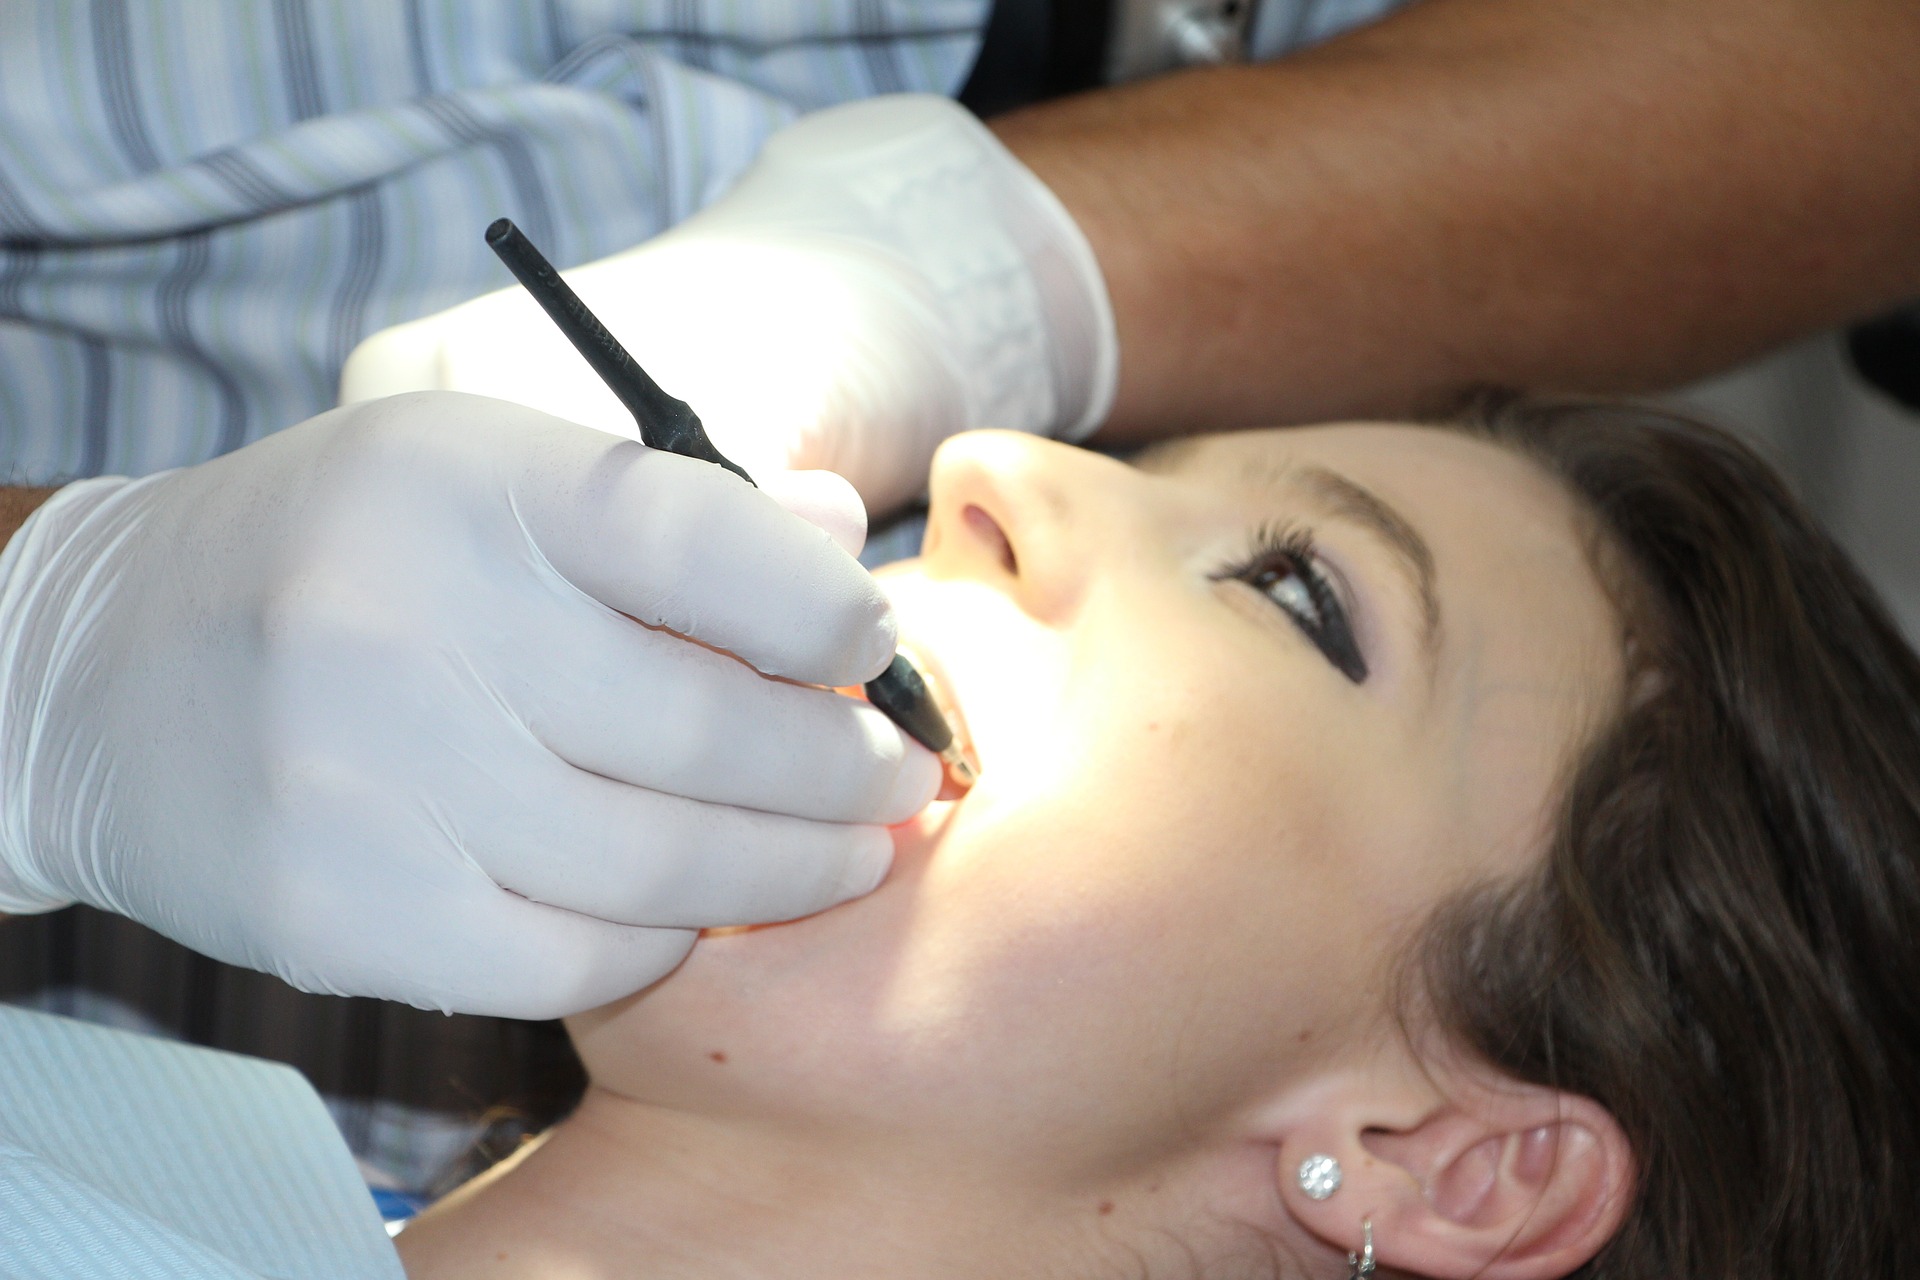 Welche gesetzlichen Kassen bezuschussen die professionelle Zahnreinigung?